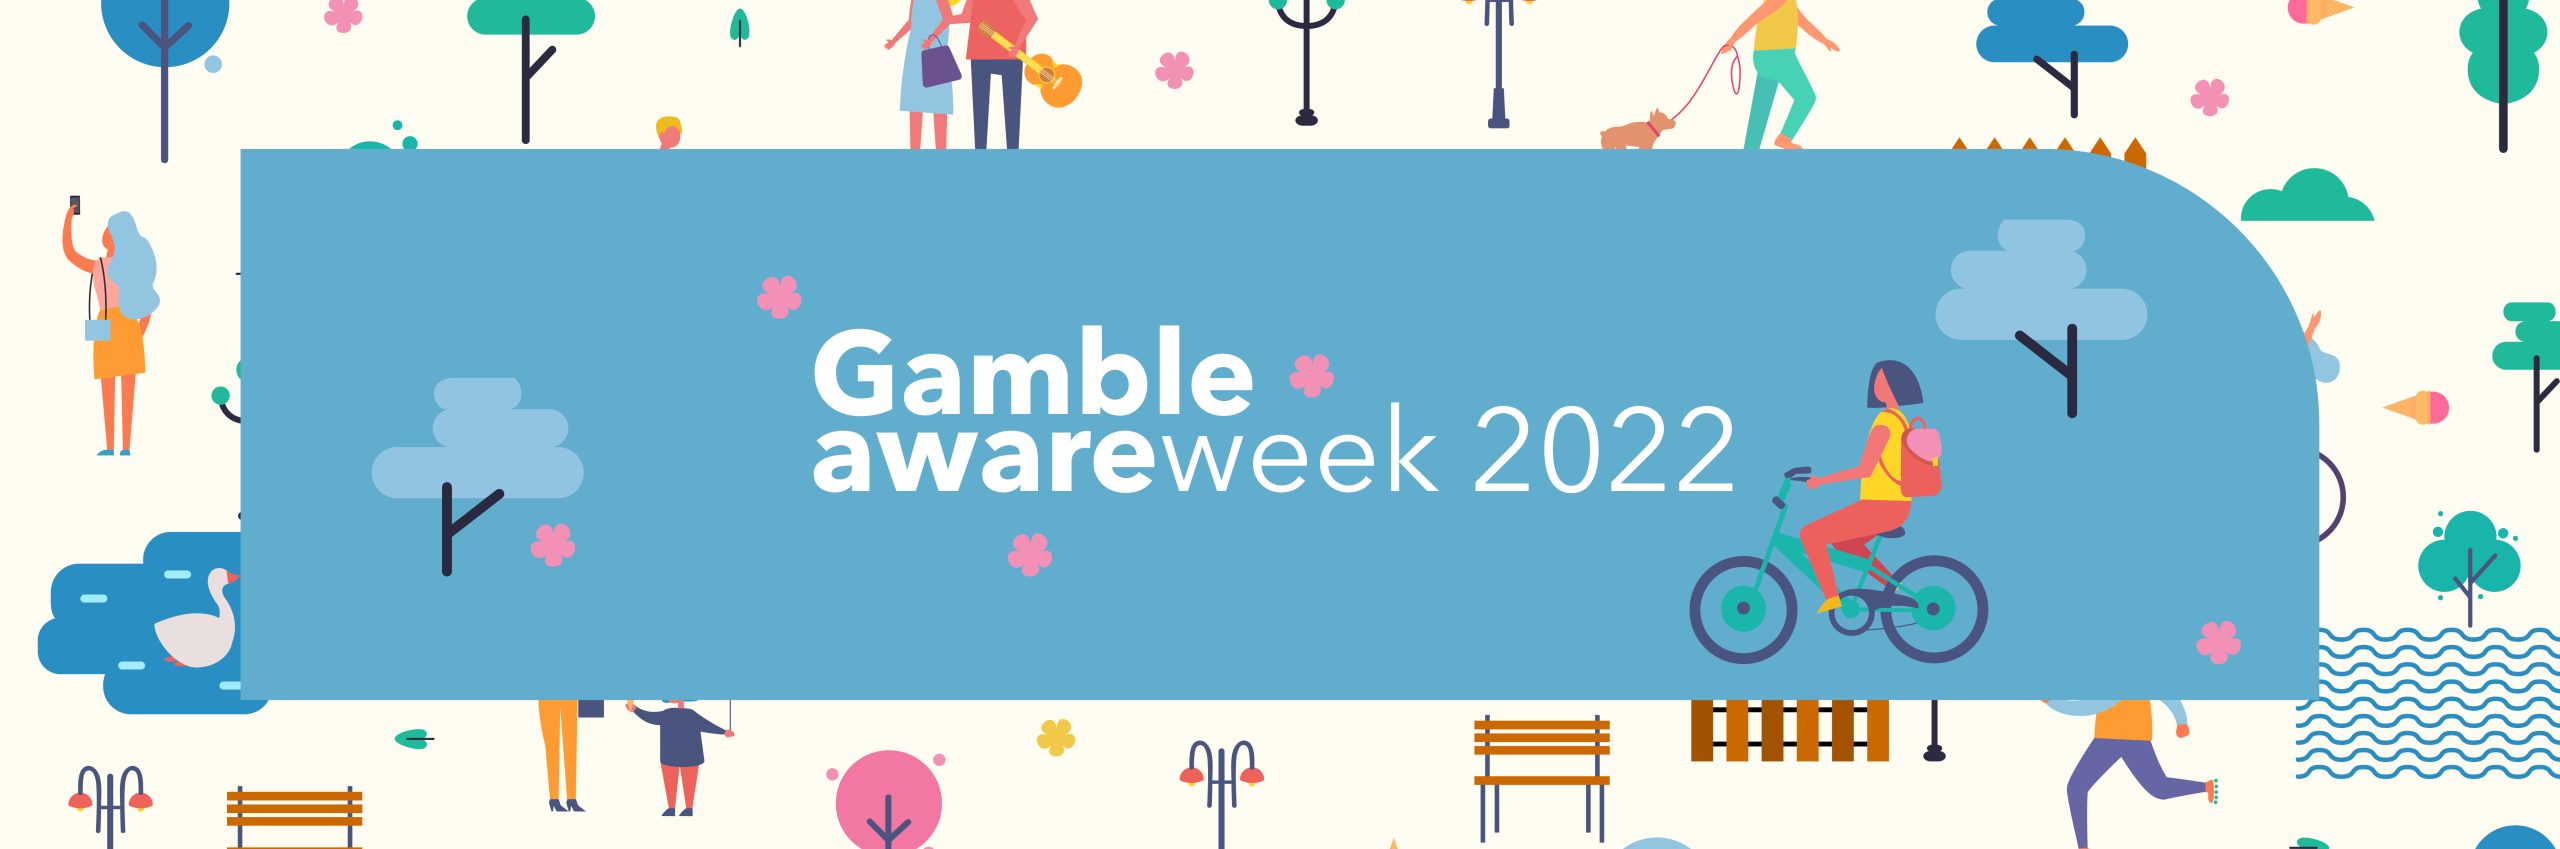 Gamble Aware Week 2022